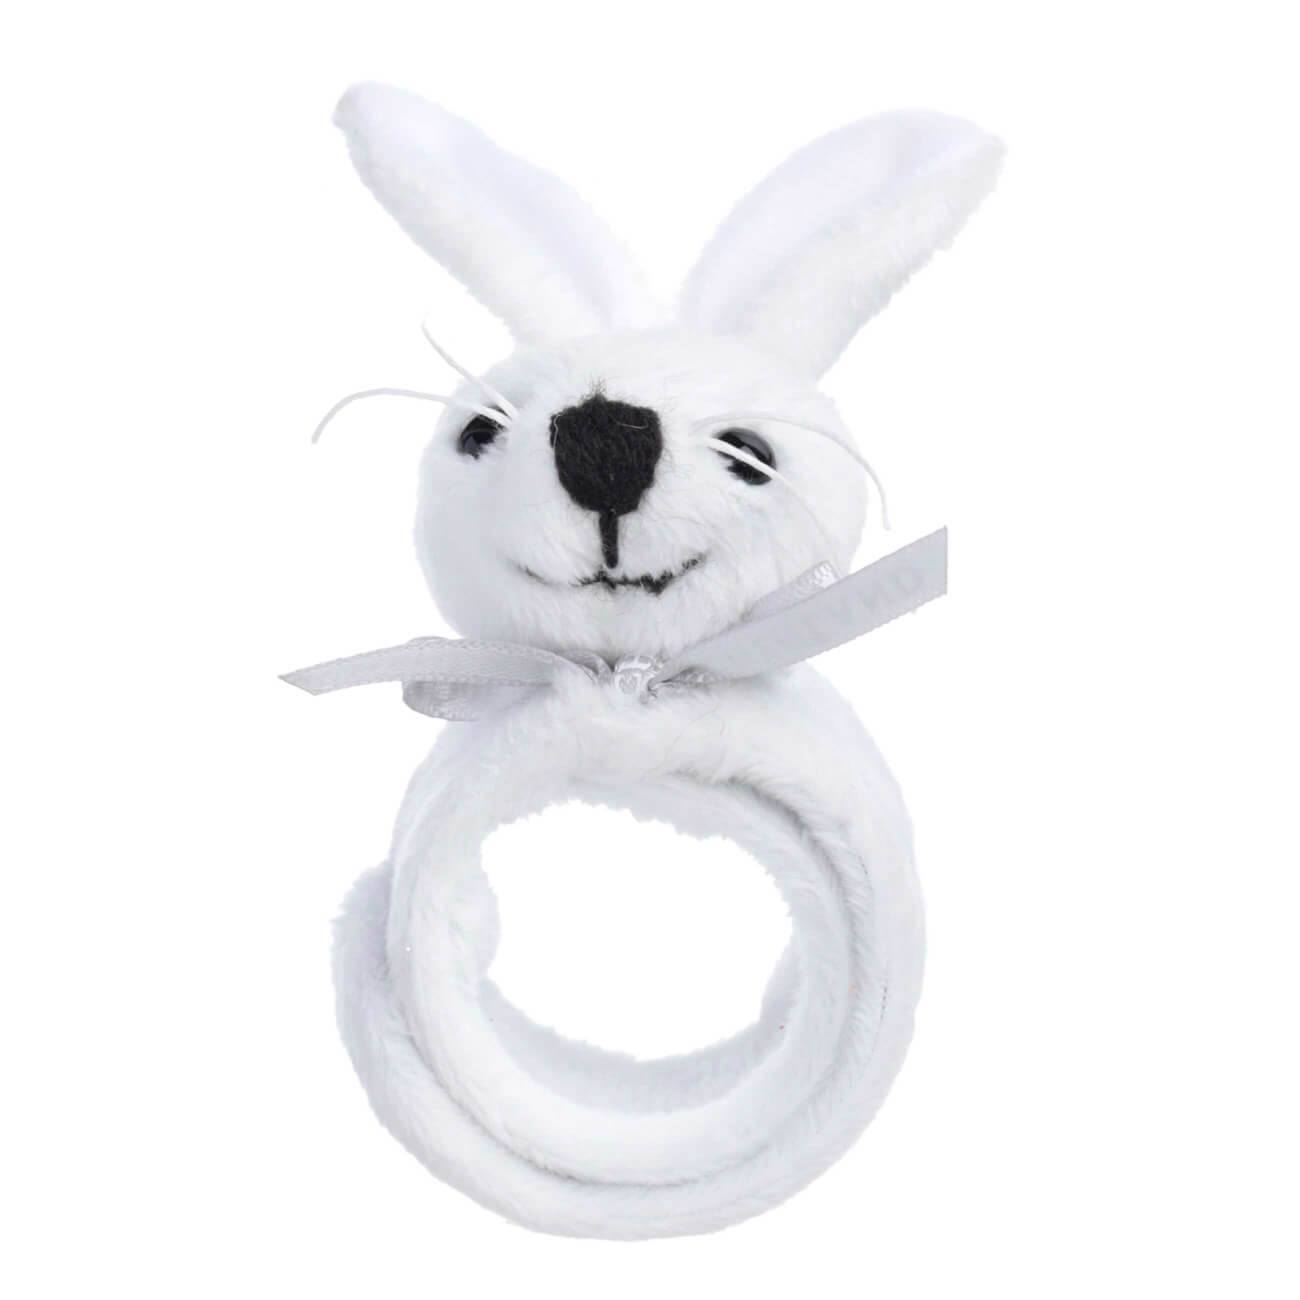 Браслет, 22 см, детский, мягкий, полиэстер, белый, Кролик, Rabbit toy игрушка 20 см мягкая с подвижными лапами полиэстер белая кролик rabbit toy